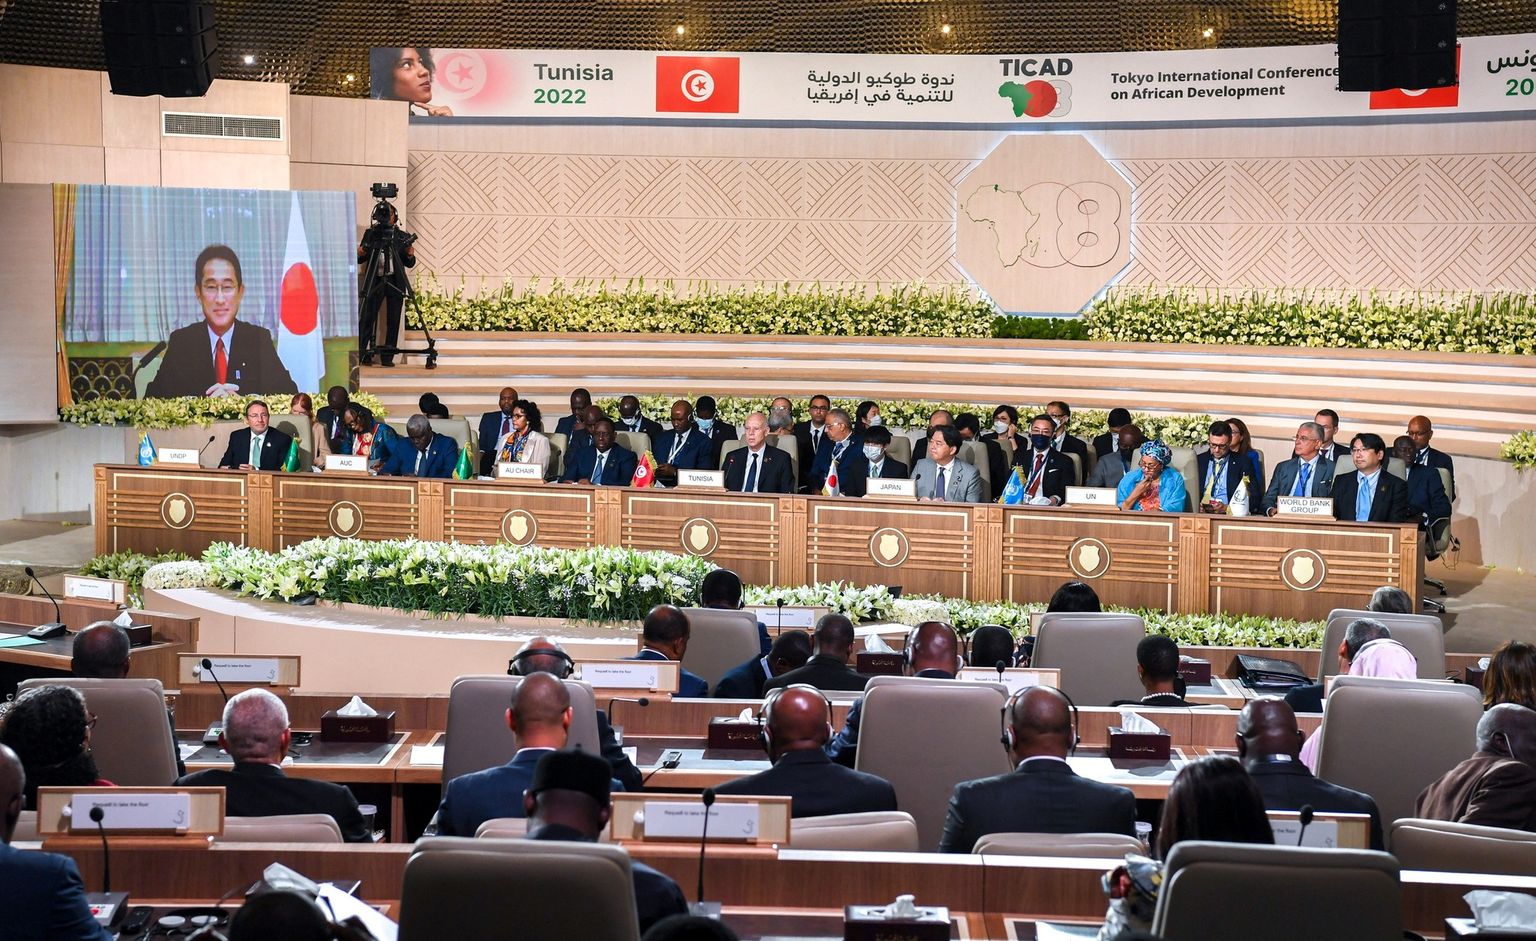 Jaapani peaminister Fumio Kishida esineb veebi vahendusel Tokyost Jaapani-Aafrika arengukonverentsi TICAD raames, mis peetakse sel korral Tuneesia pealinnas Tunises.